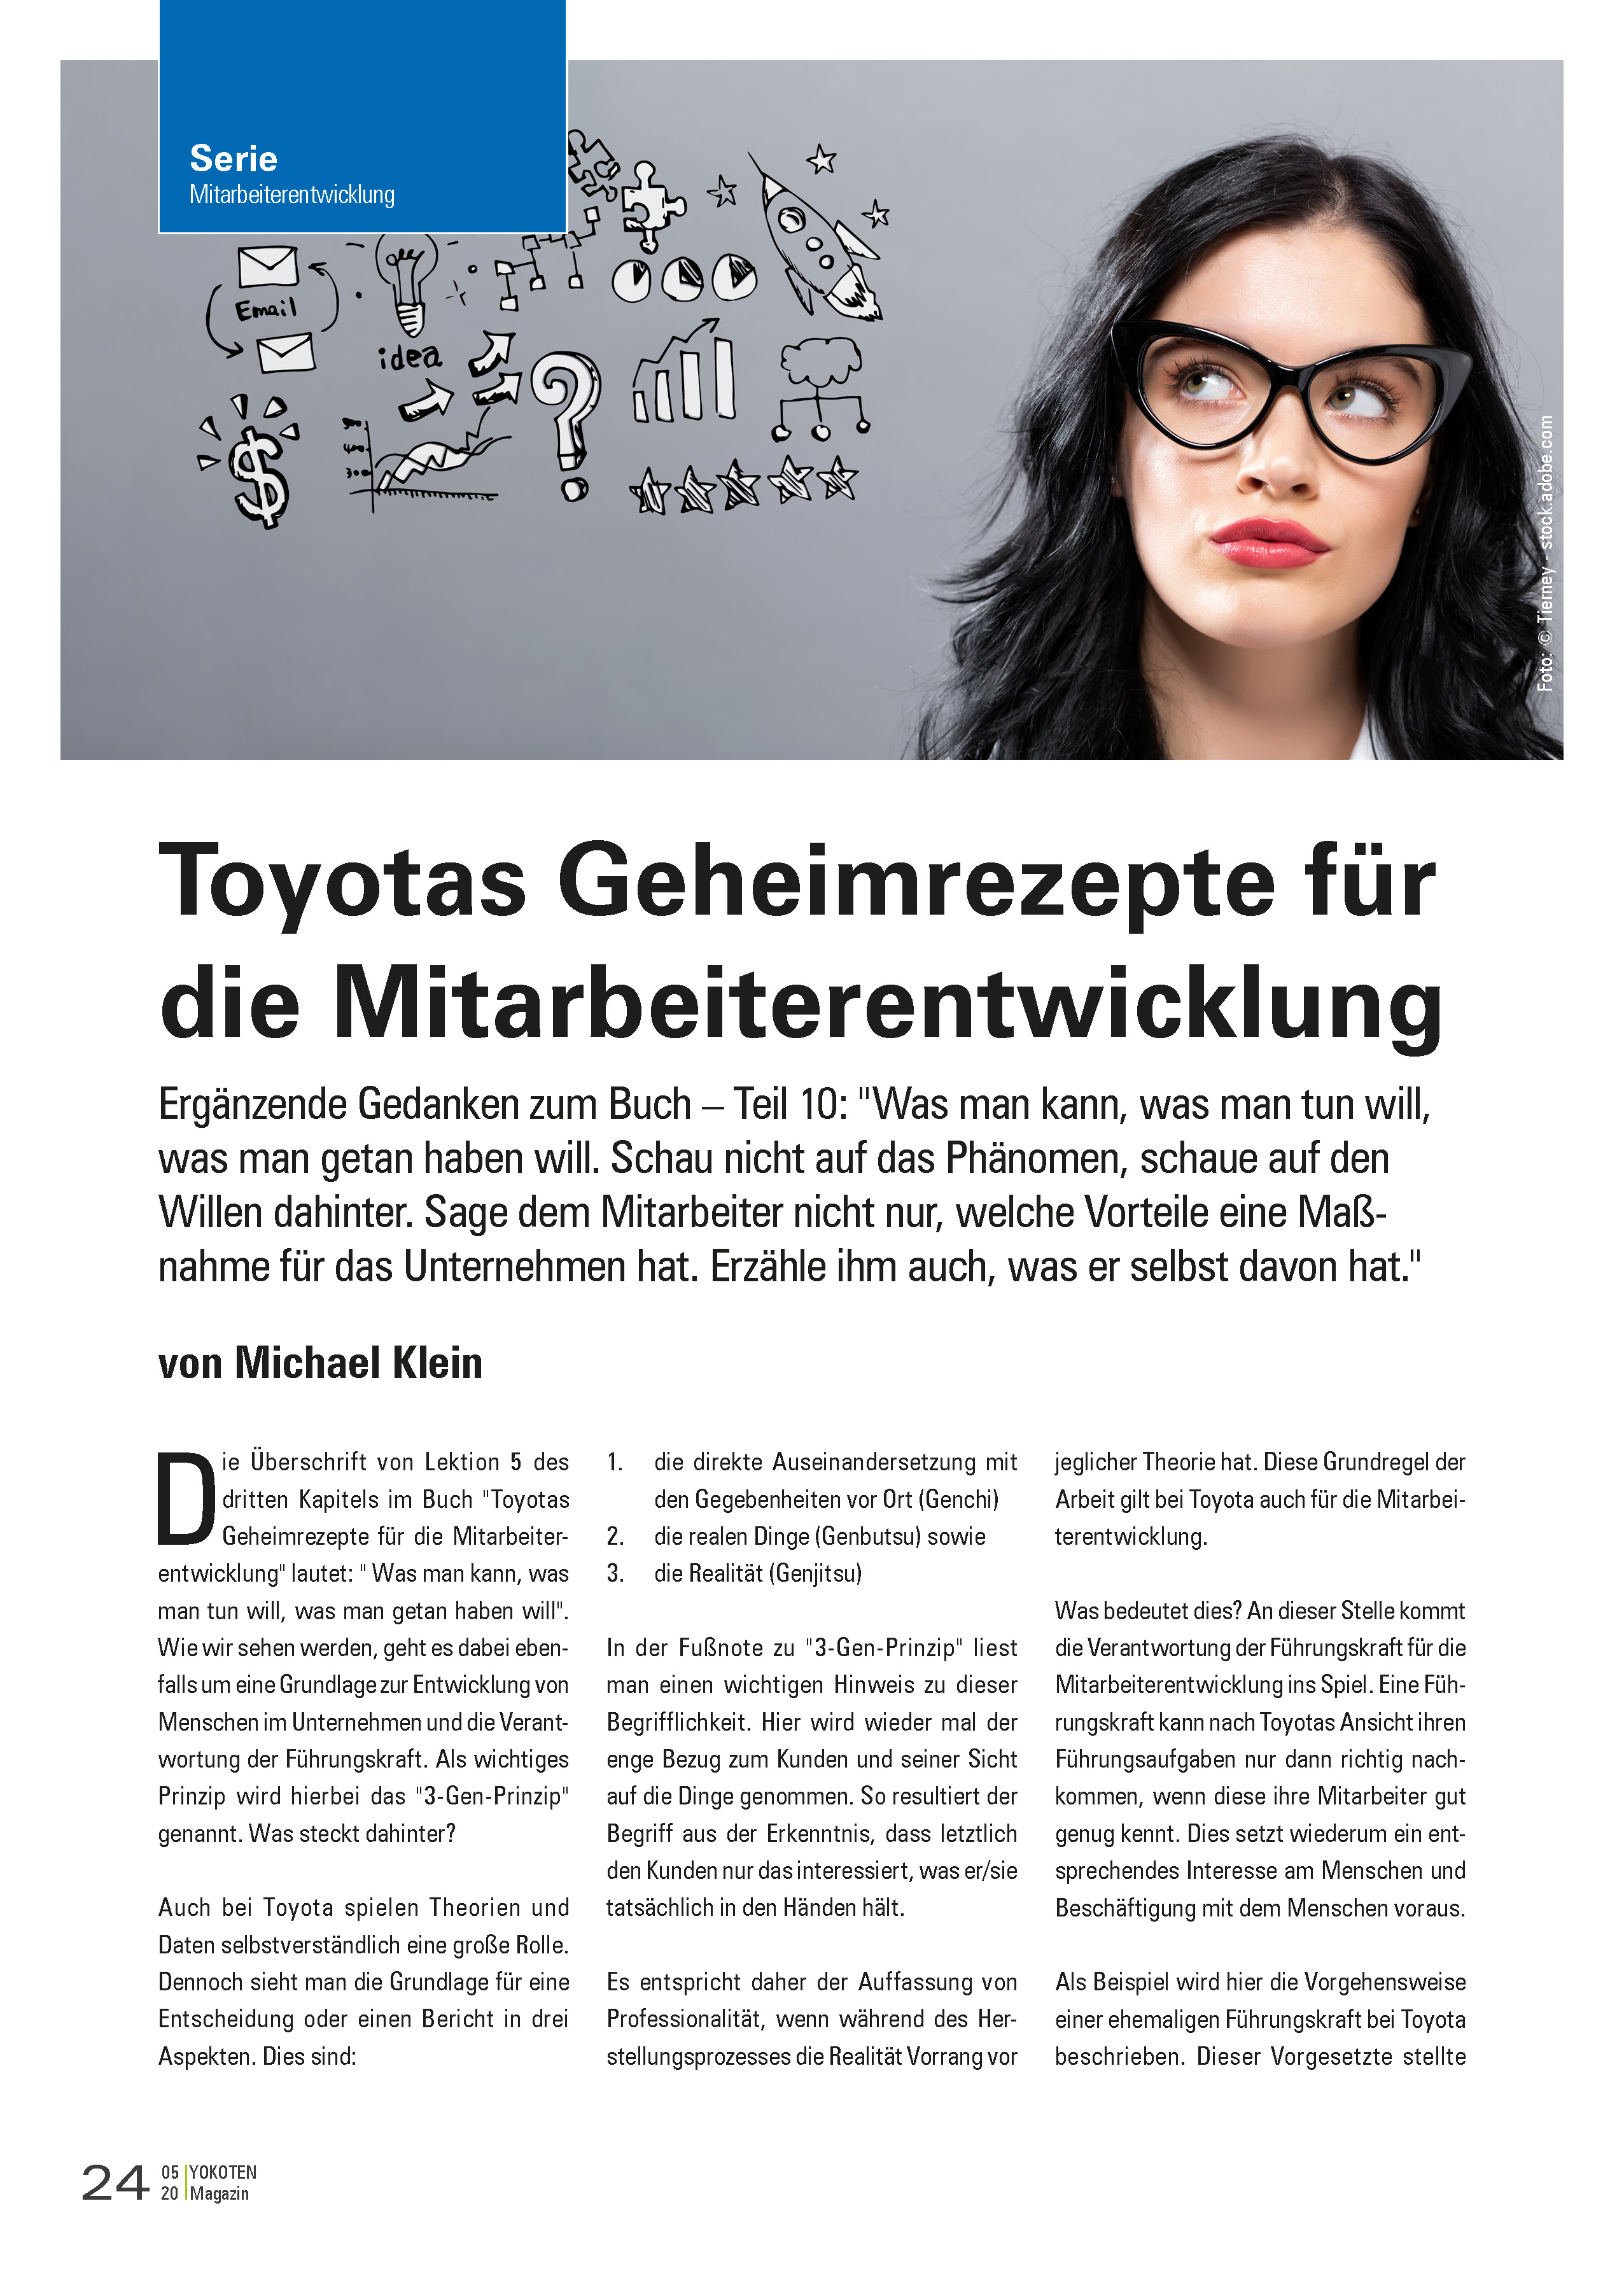 Toyotas Geheimrezepte für die Mitarbeiterentwicklung - Artikel aus Fachmagazin YOKOTEN 2020-05